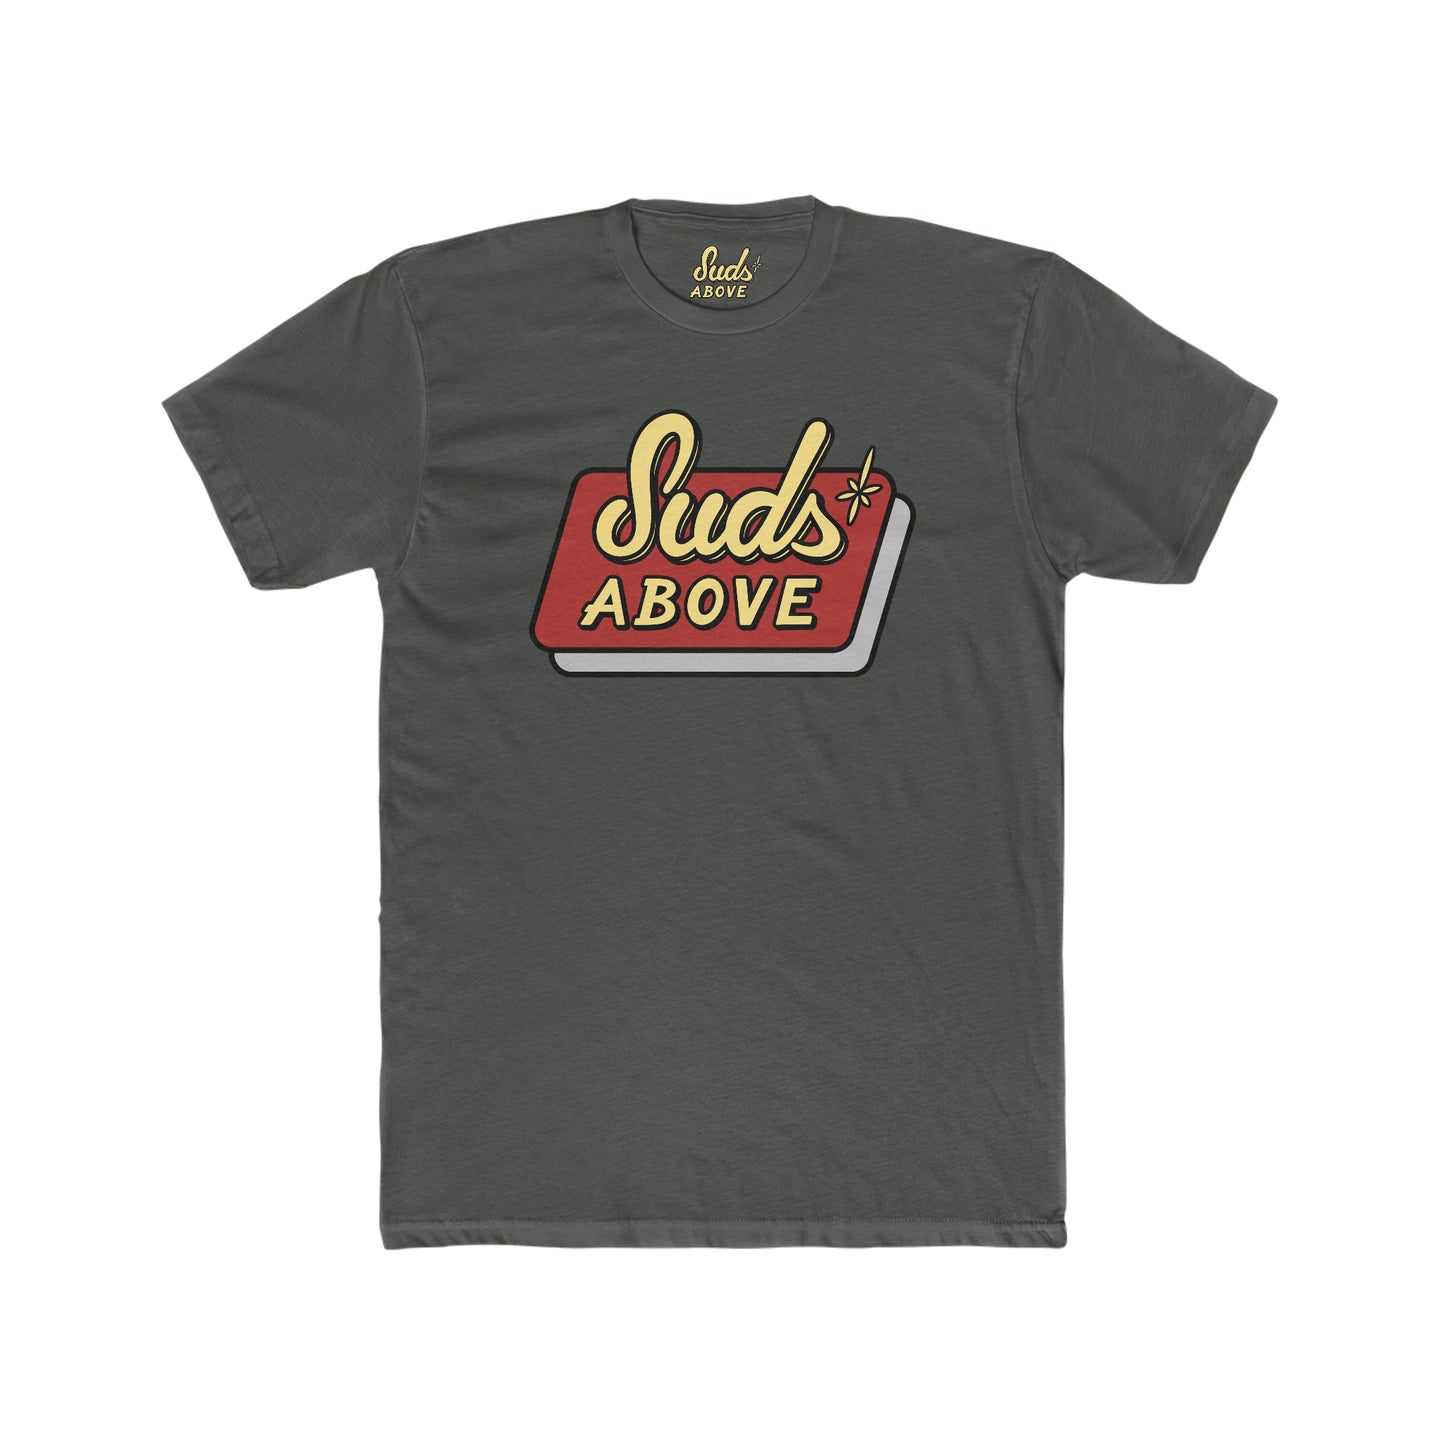 Suds Above Logo T-Shirt